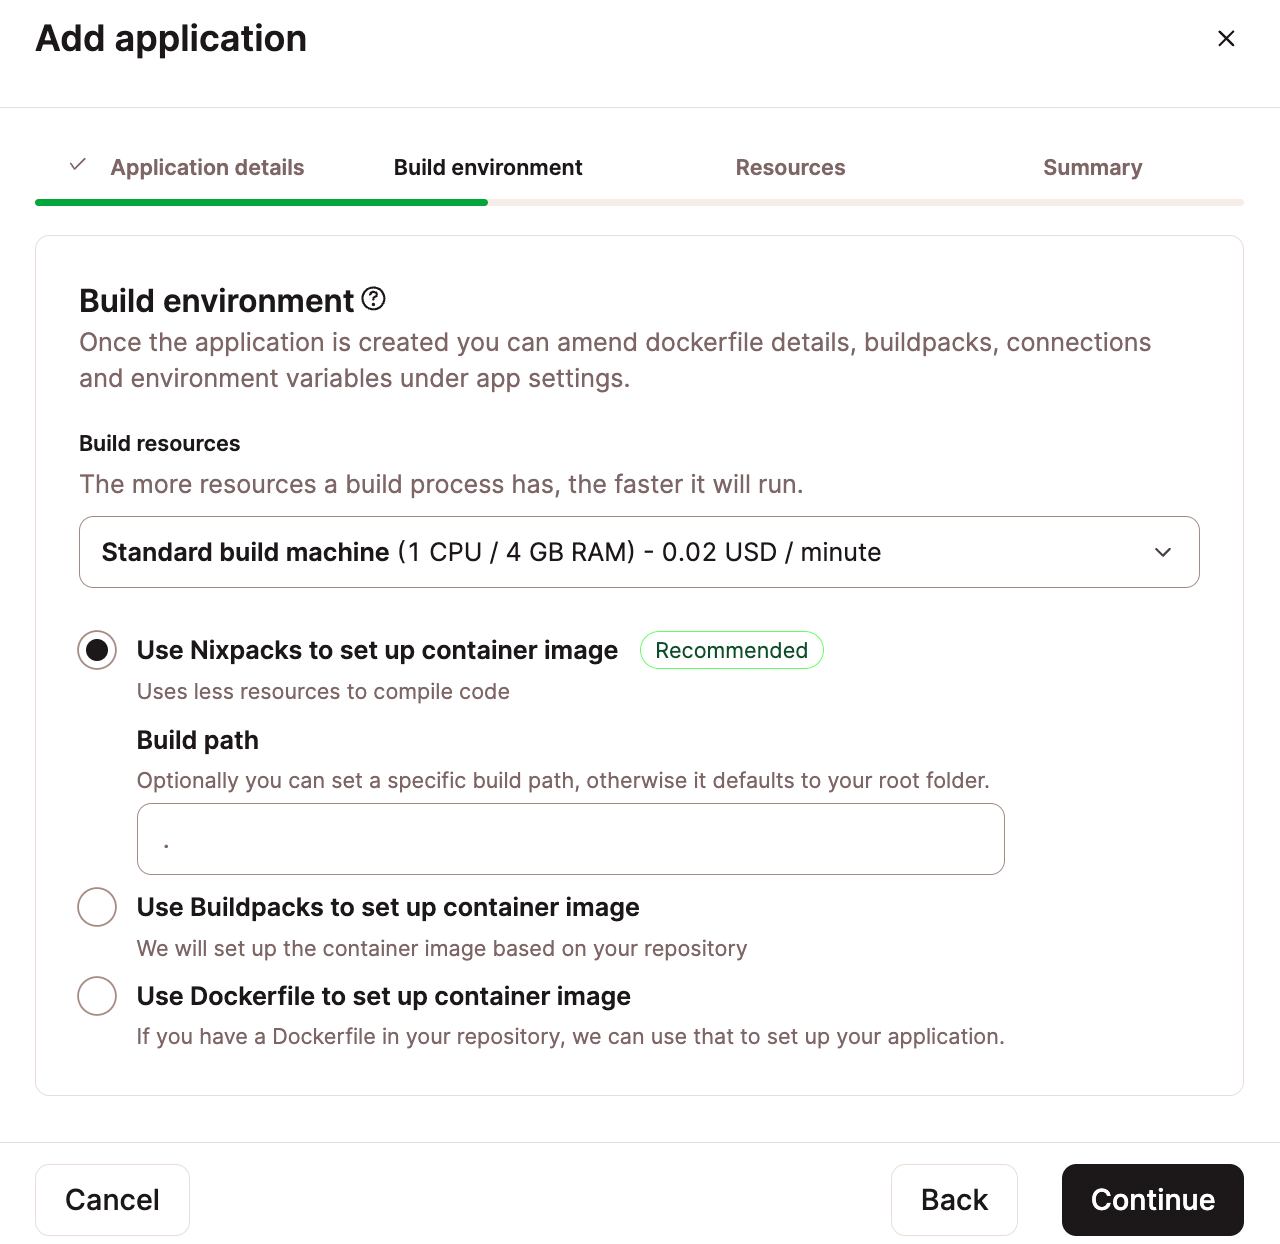 Konfiguriere die Build-Umgebung deiner Anwendung mit dem Anwendungs-Hosting von Kinsta